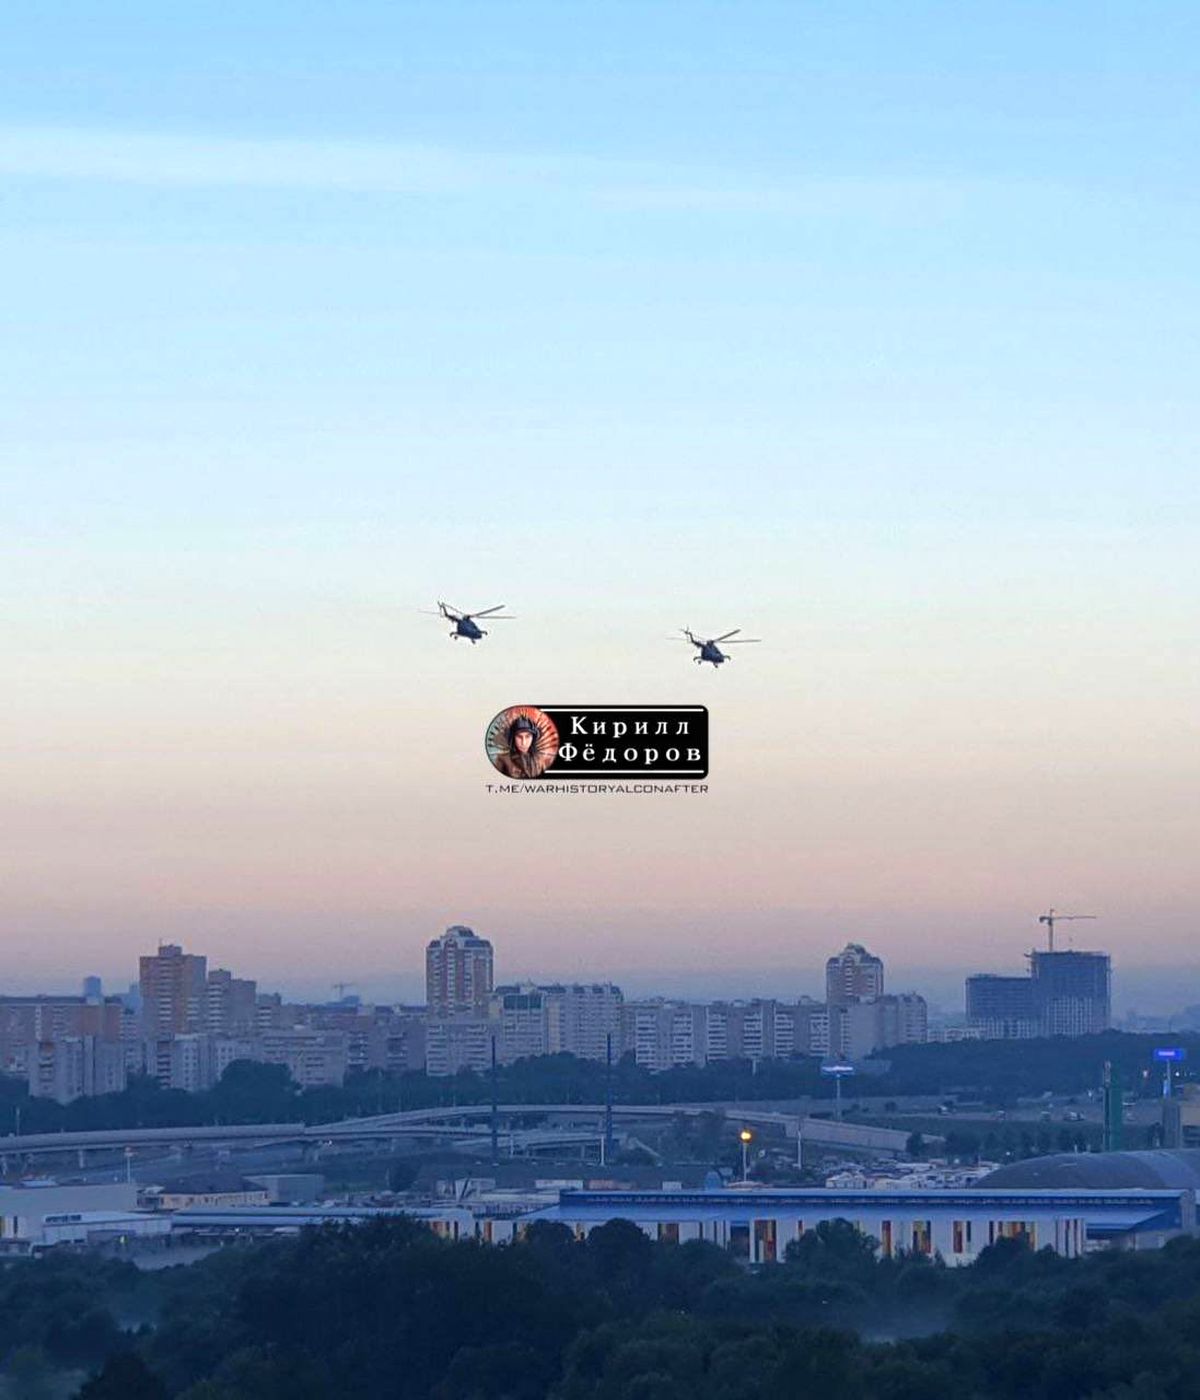 پرواز بالگردها بر فراز مسکو در پی انفجار مهیب